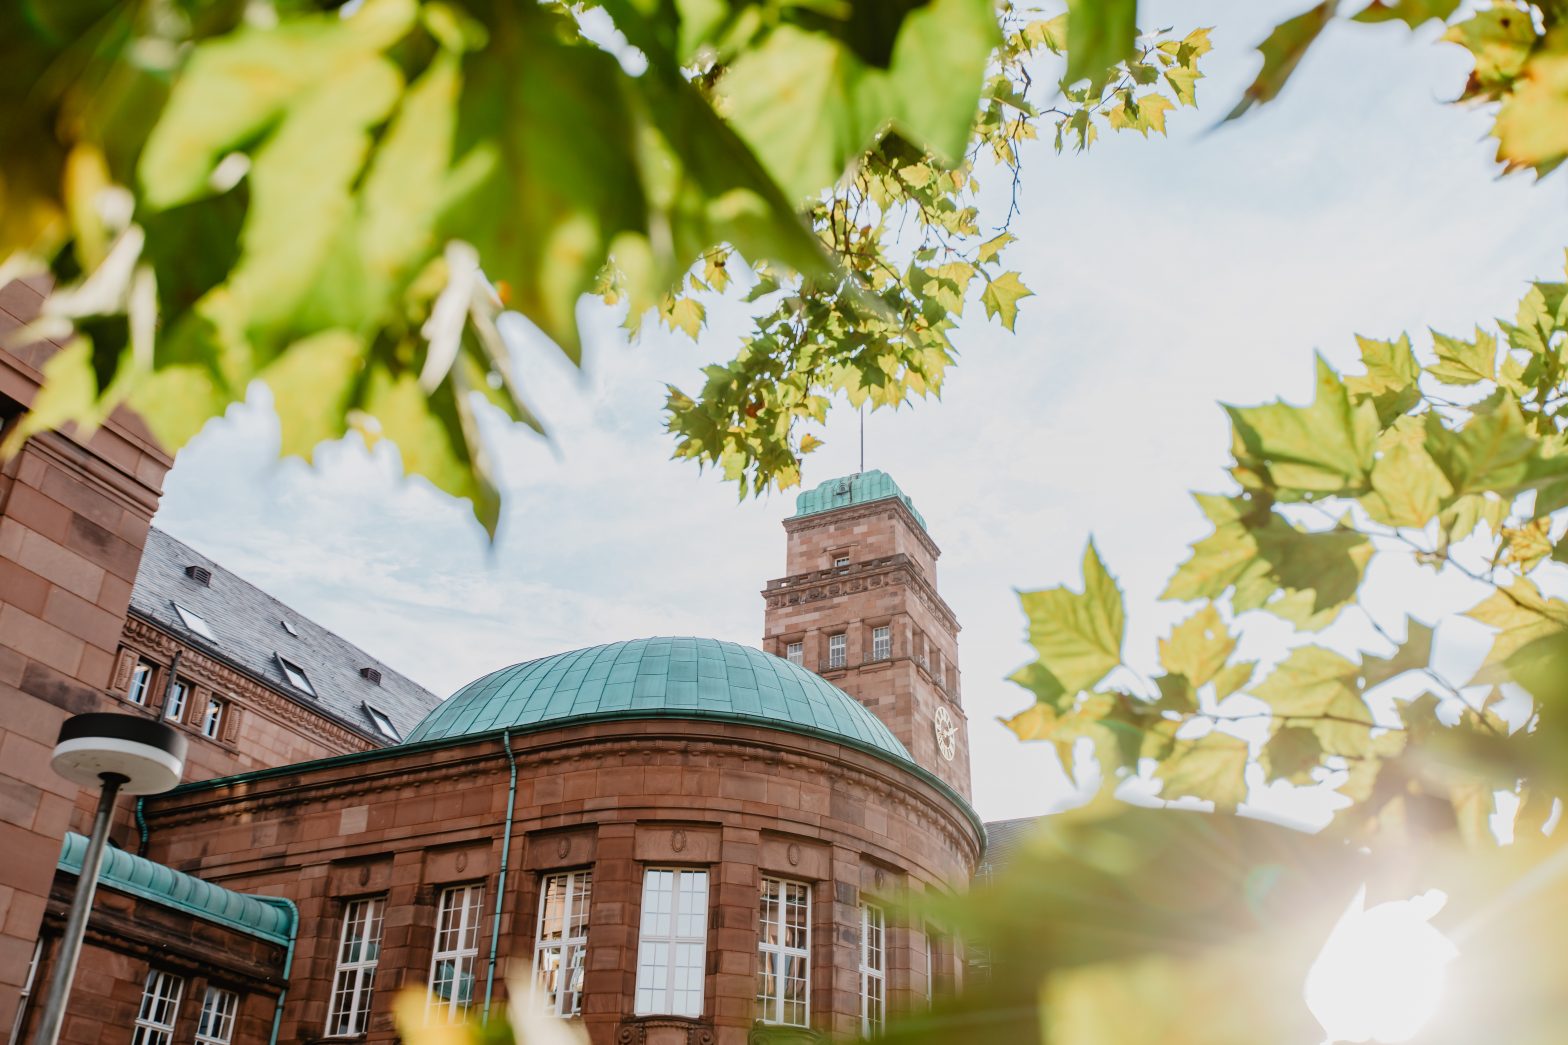 Blick auf Universitätsgebäude, umrahmt von grünen Blättern eines Baumes